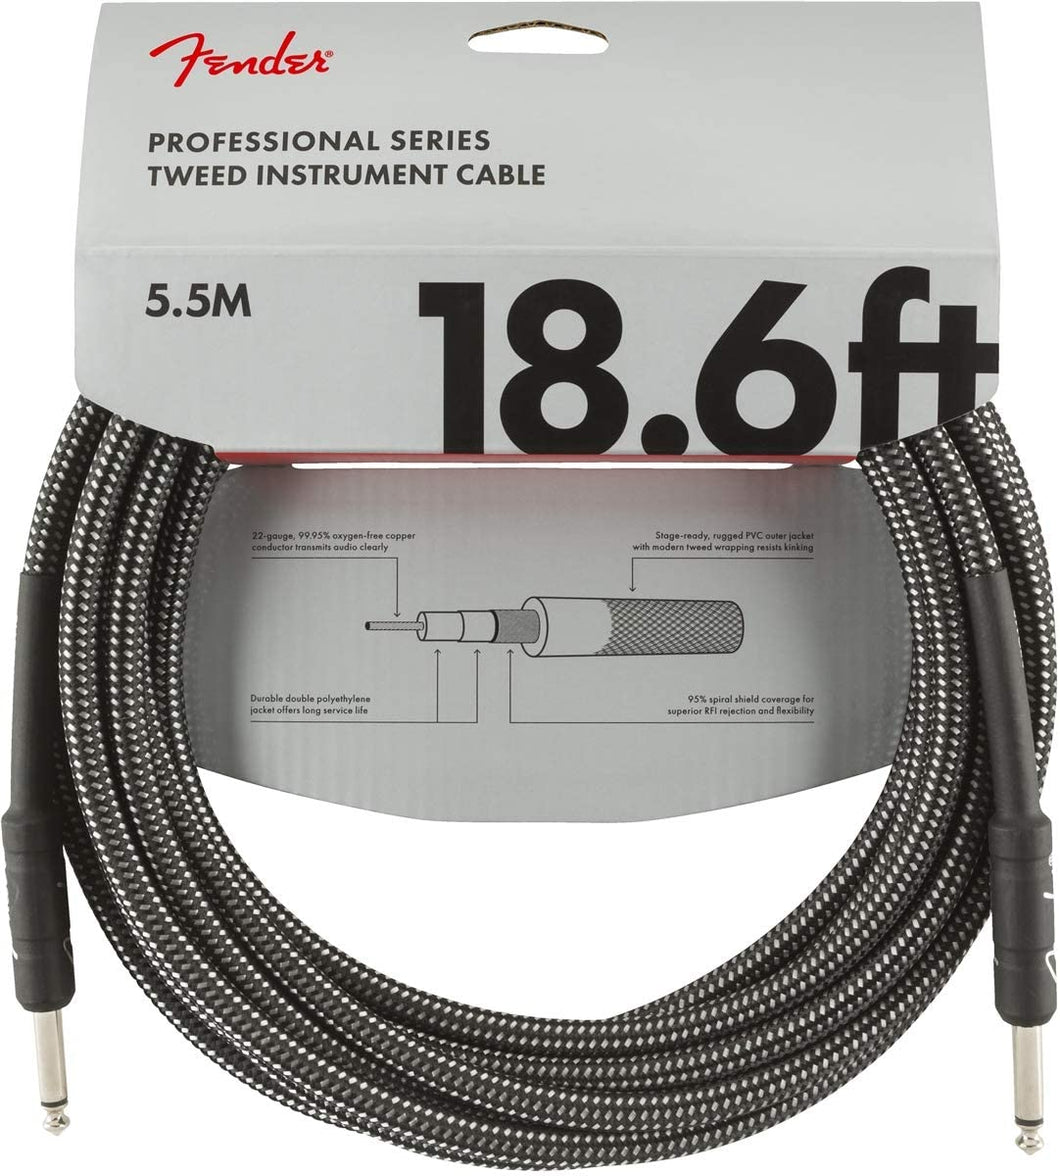 Cable para Instrumentos de 18.6ft con Punta Recta Fender Professional Series